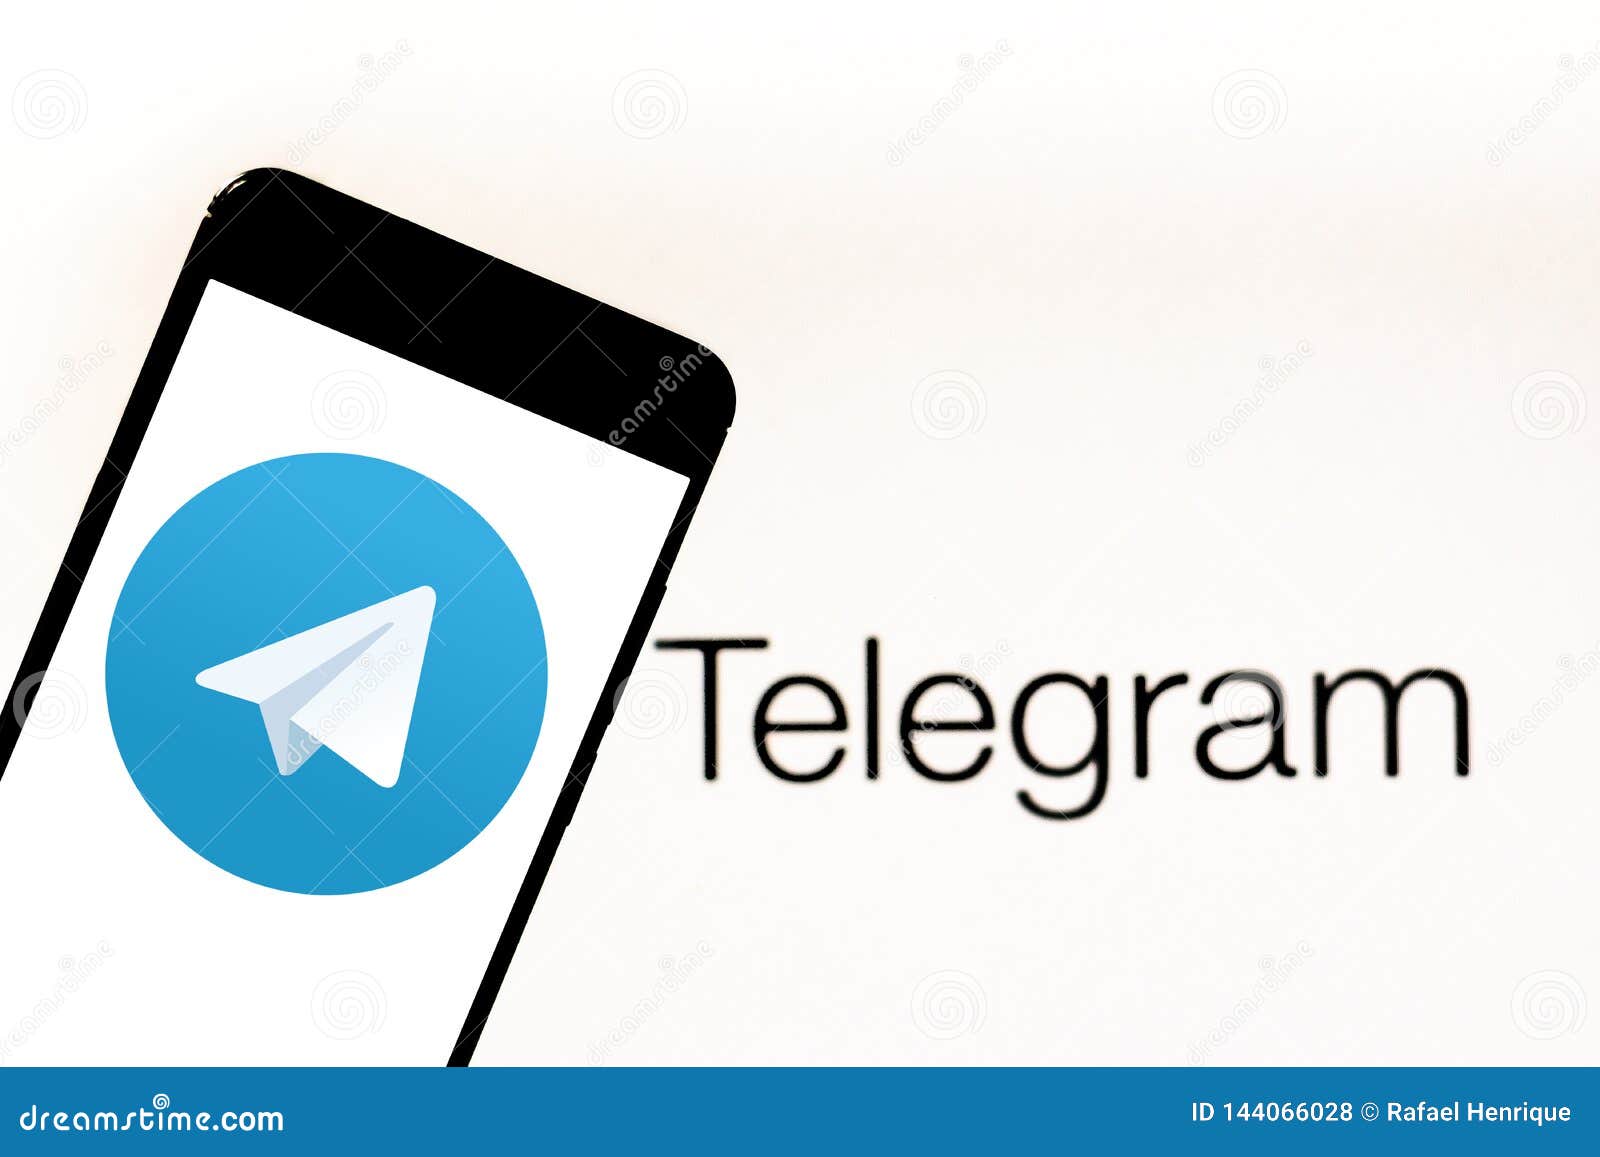 Telegram App Logo On Your Mobile Device. Telegram Is An ...